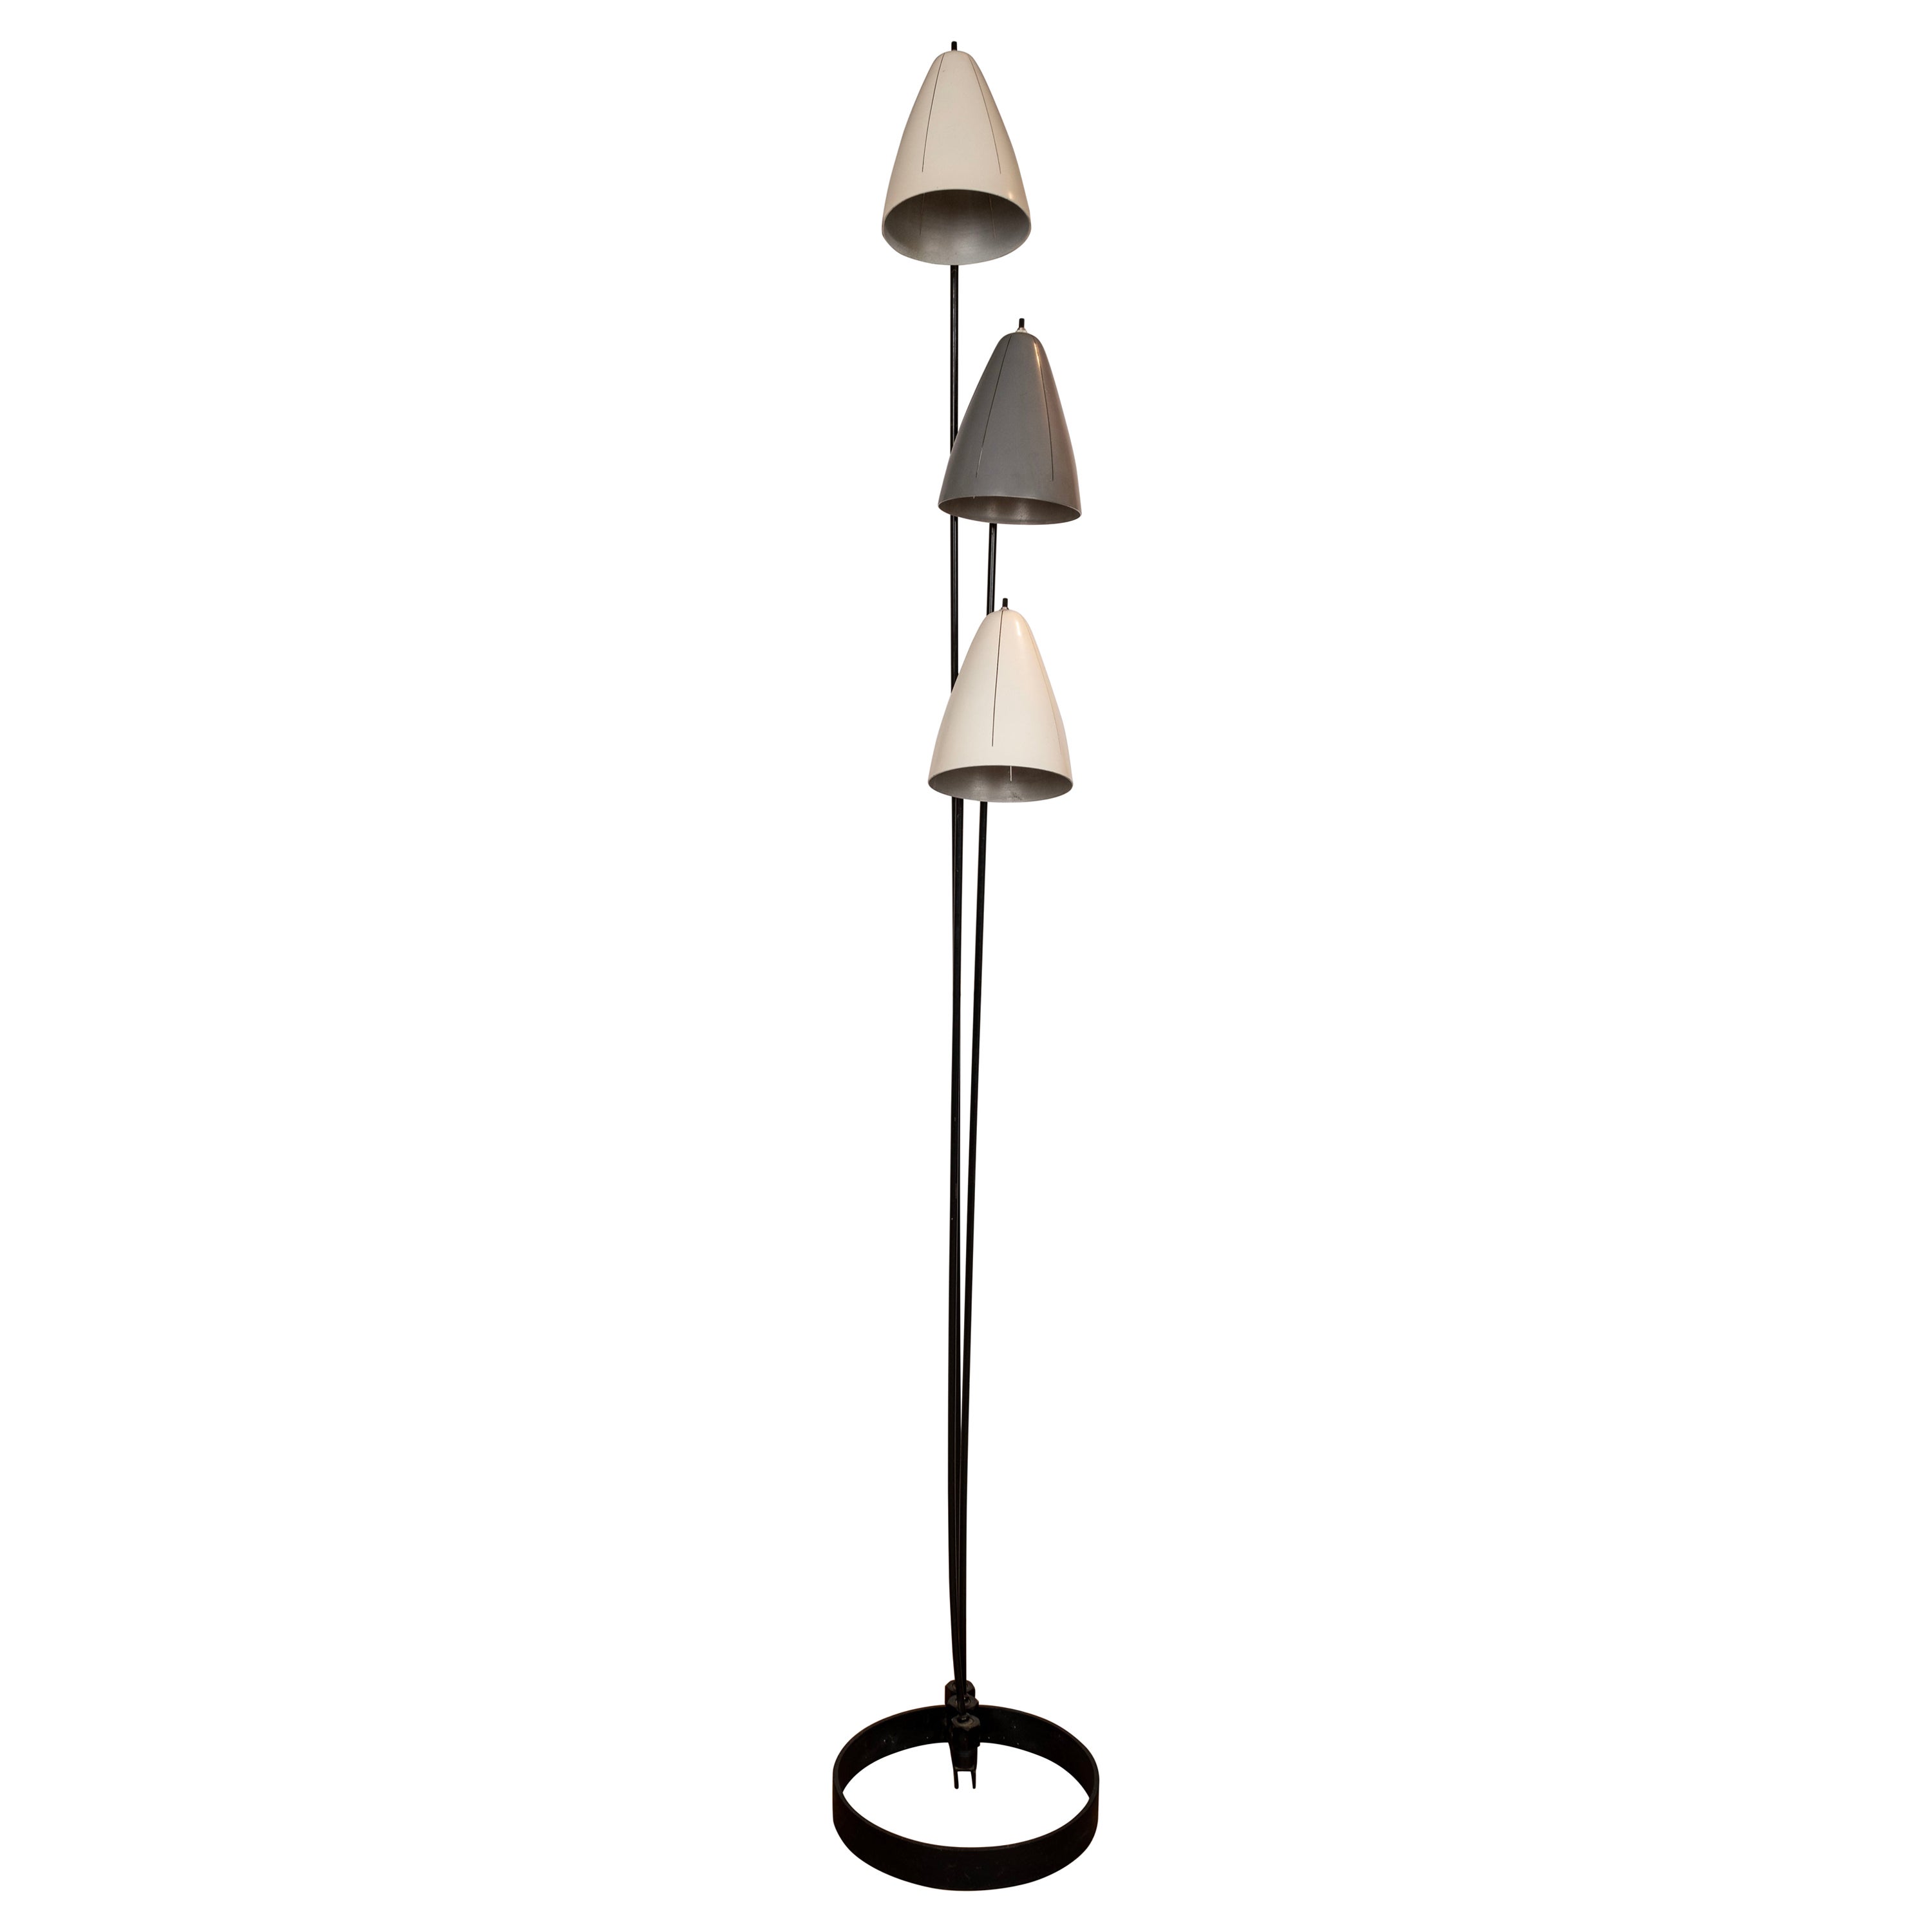  Articulating Floor Lamp by Ben Seibel